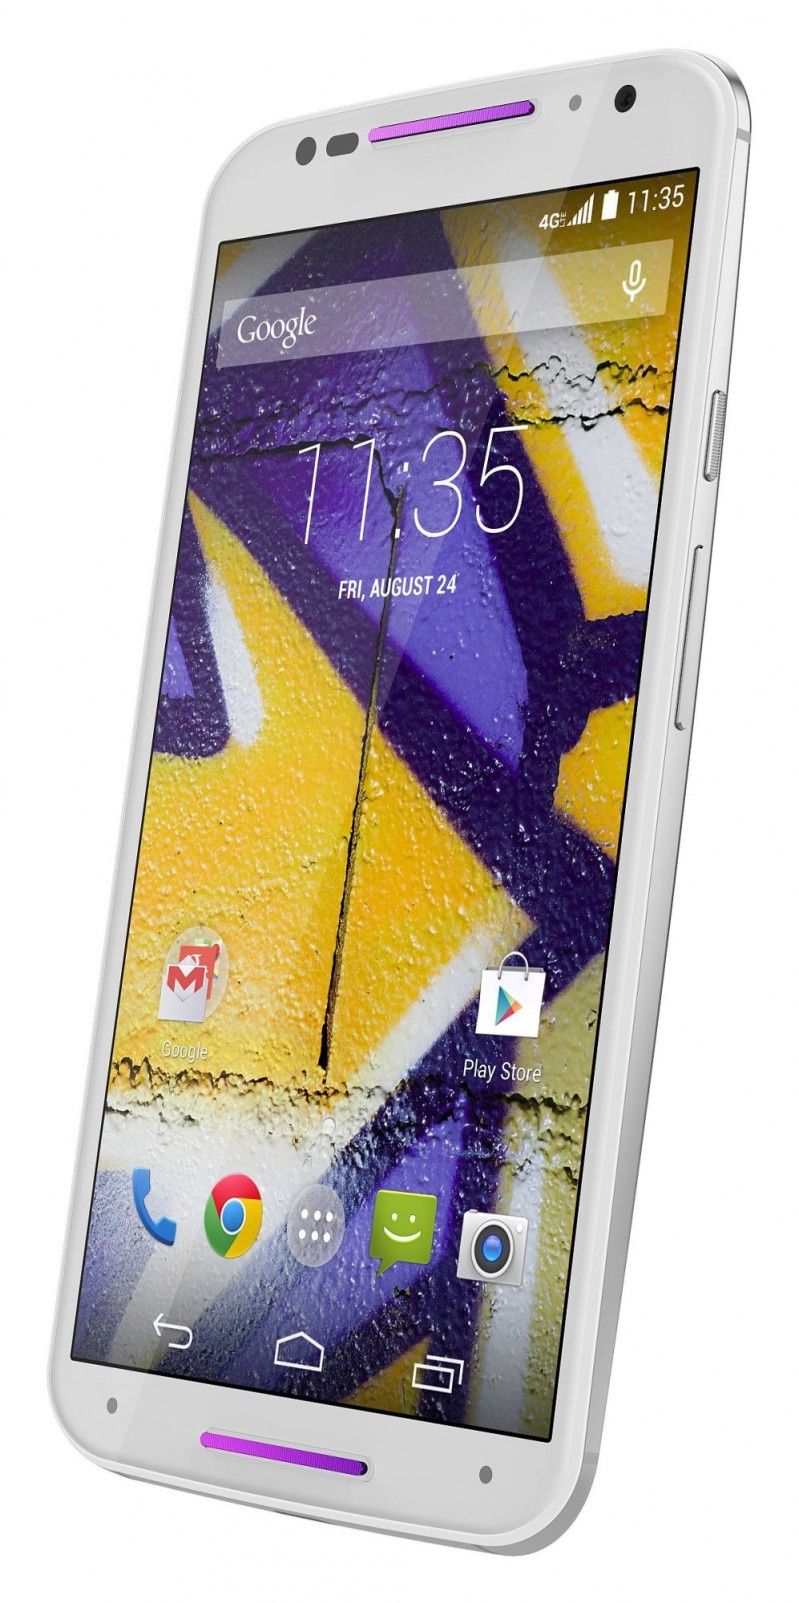 Ulepszona Motorola Moto X z nowym wyświetlaczem 5.2”